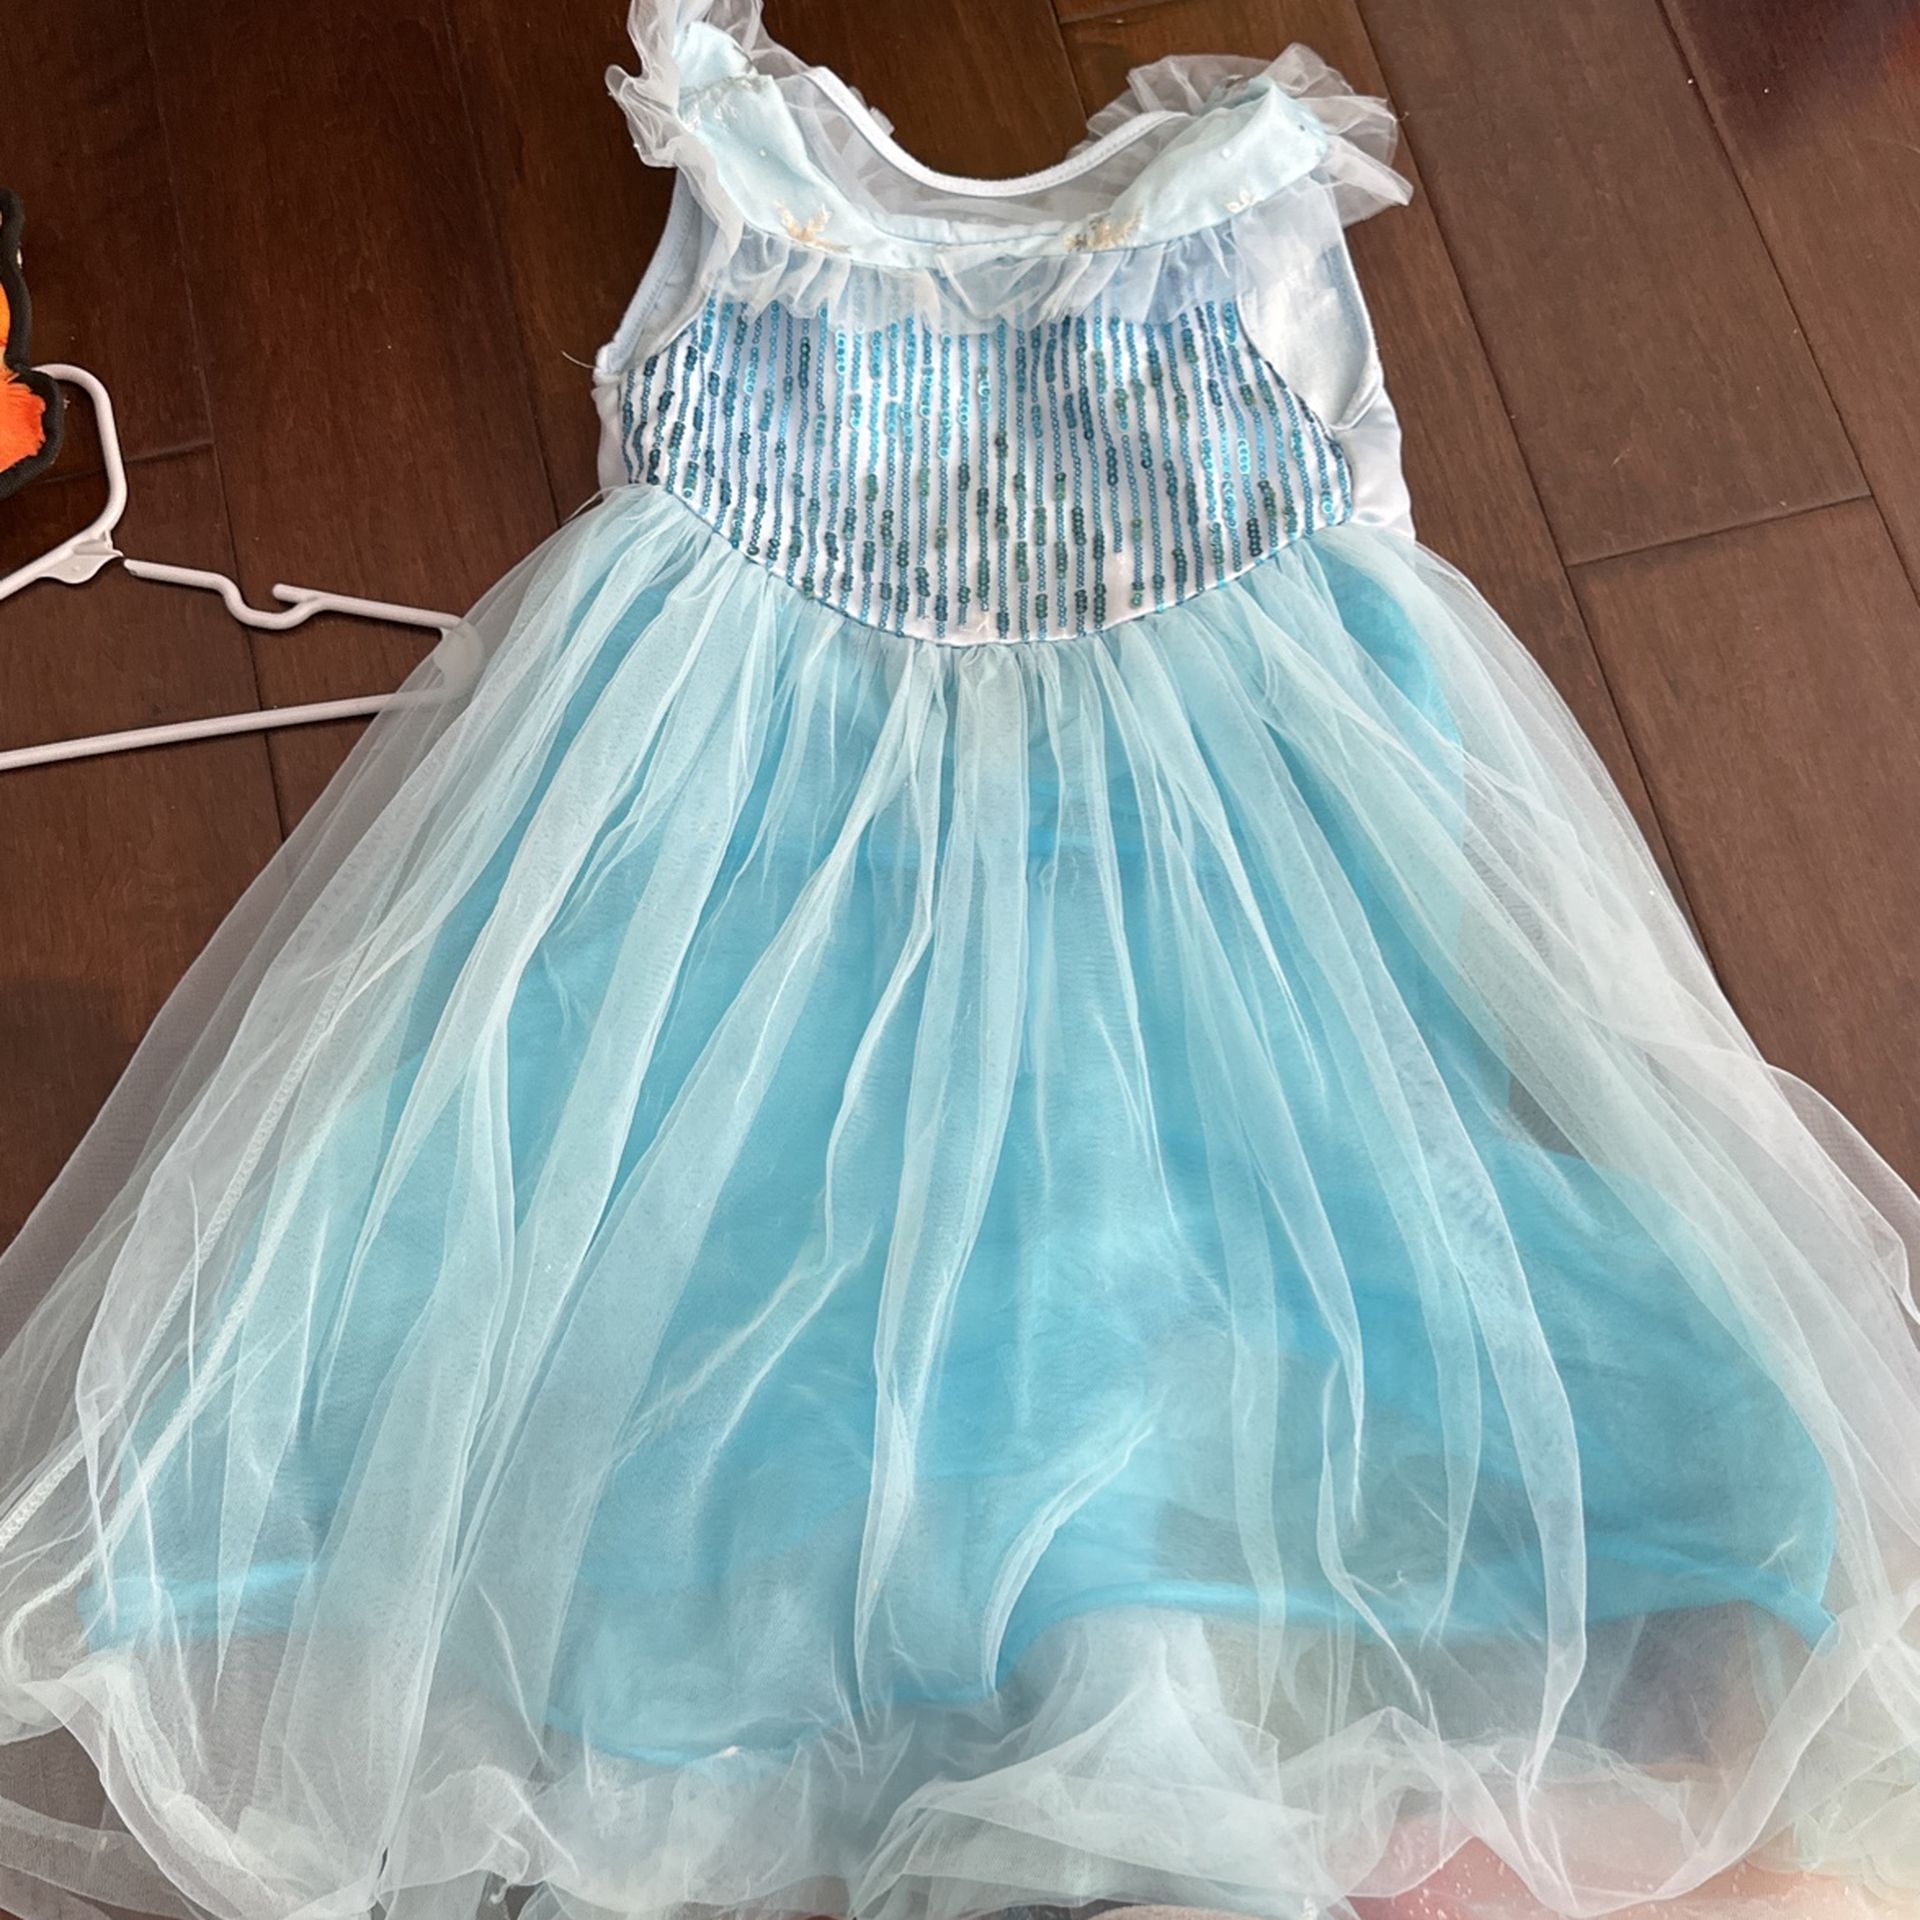 Frozen Elsa Dress Comes With Cape 